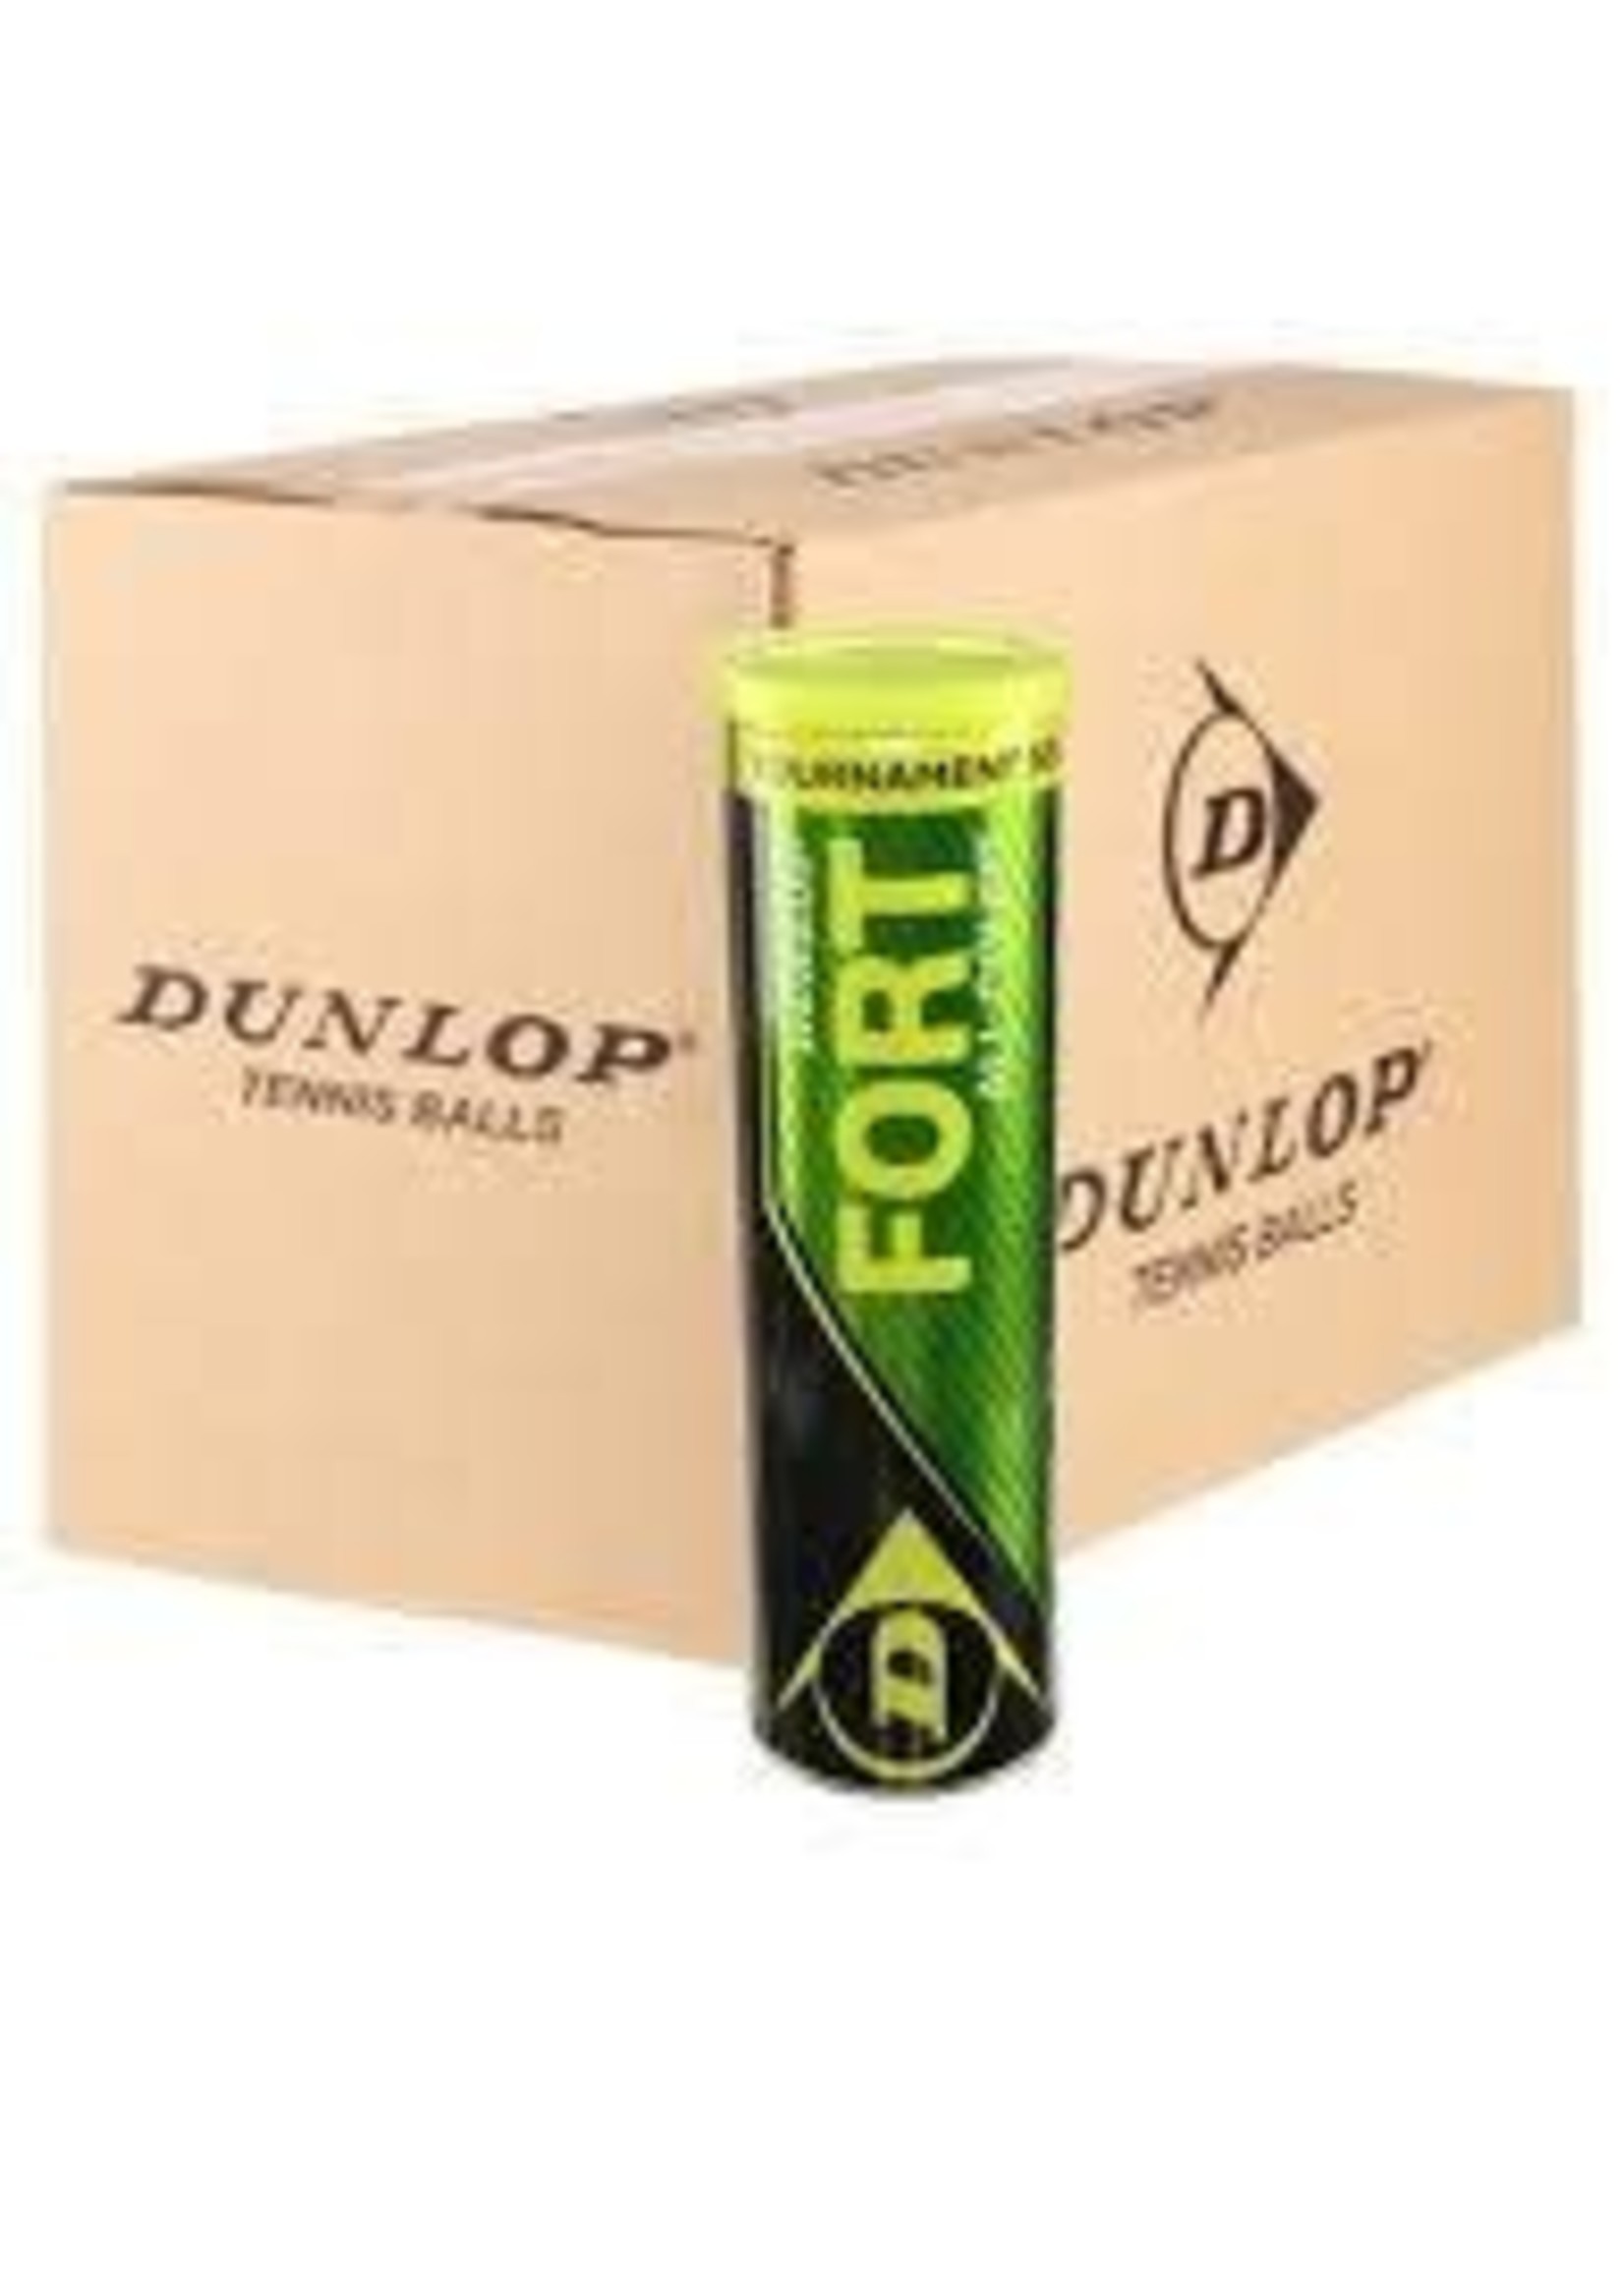 Dunlop Dunlop Fort Tournament Select Tennis Balls - BULK ORDER